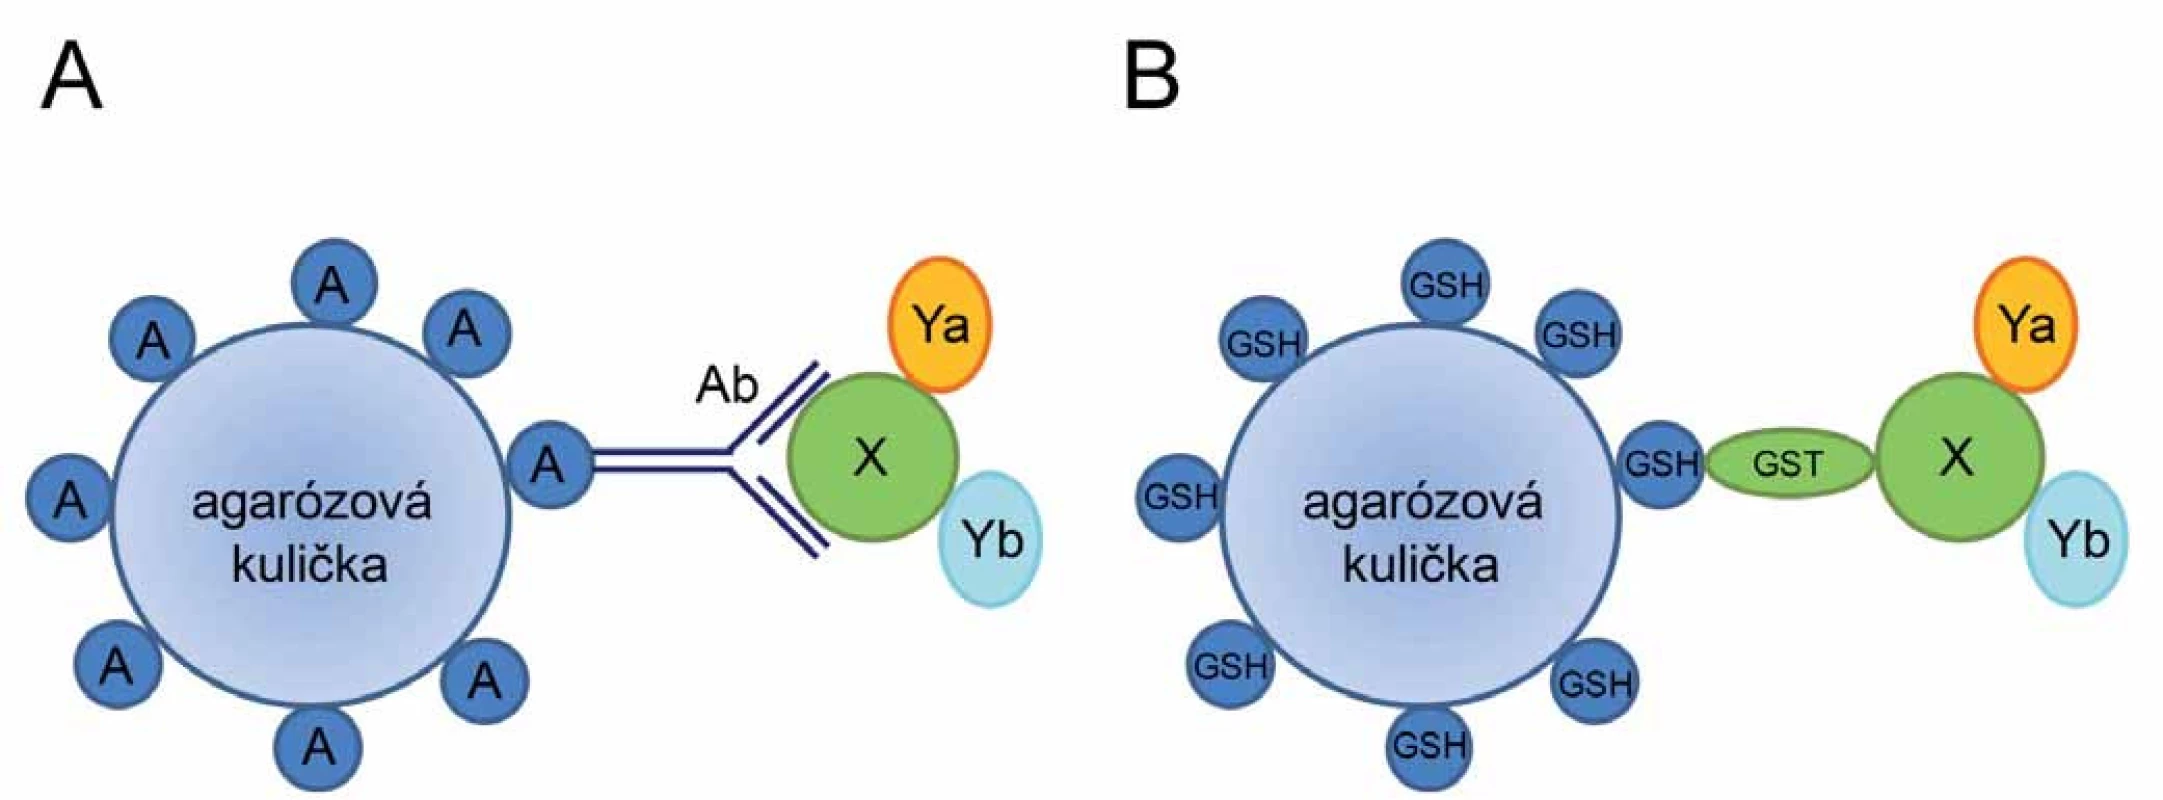 Princip koimunoprecipitace (A) a afi nitní koprecipitace (B).
A. Protein X spolu s jeho interakčními partnery (proteiny Ya a Yb) je navázán na specifickou protilátku (Ab). Vzniklý imunokomplex je ze směsi vychytán pomocí agarózových kuliček s imobilizovaným proteinem A, který rozeznává Fc fragment protilátek. B. Komplex tří proteinů (X, Ya, Yb) je vychytán ze směsi pomocí silné interakce proteinu GST (fúzovaného s proteinem X) a glutationu (GSH) imobilizovaného na agarózových kuličkách.